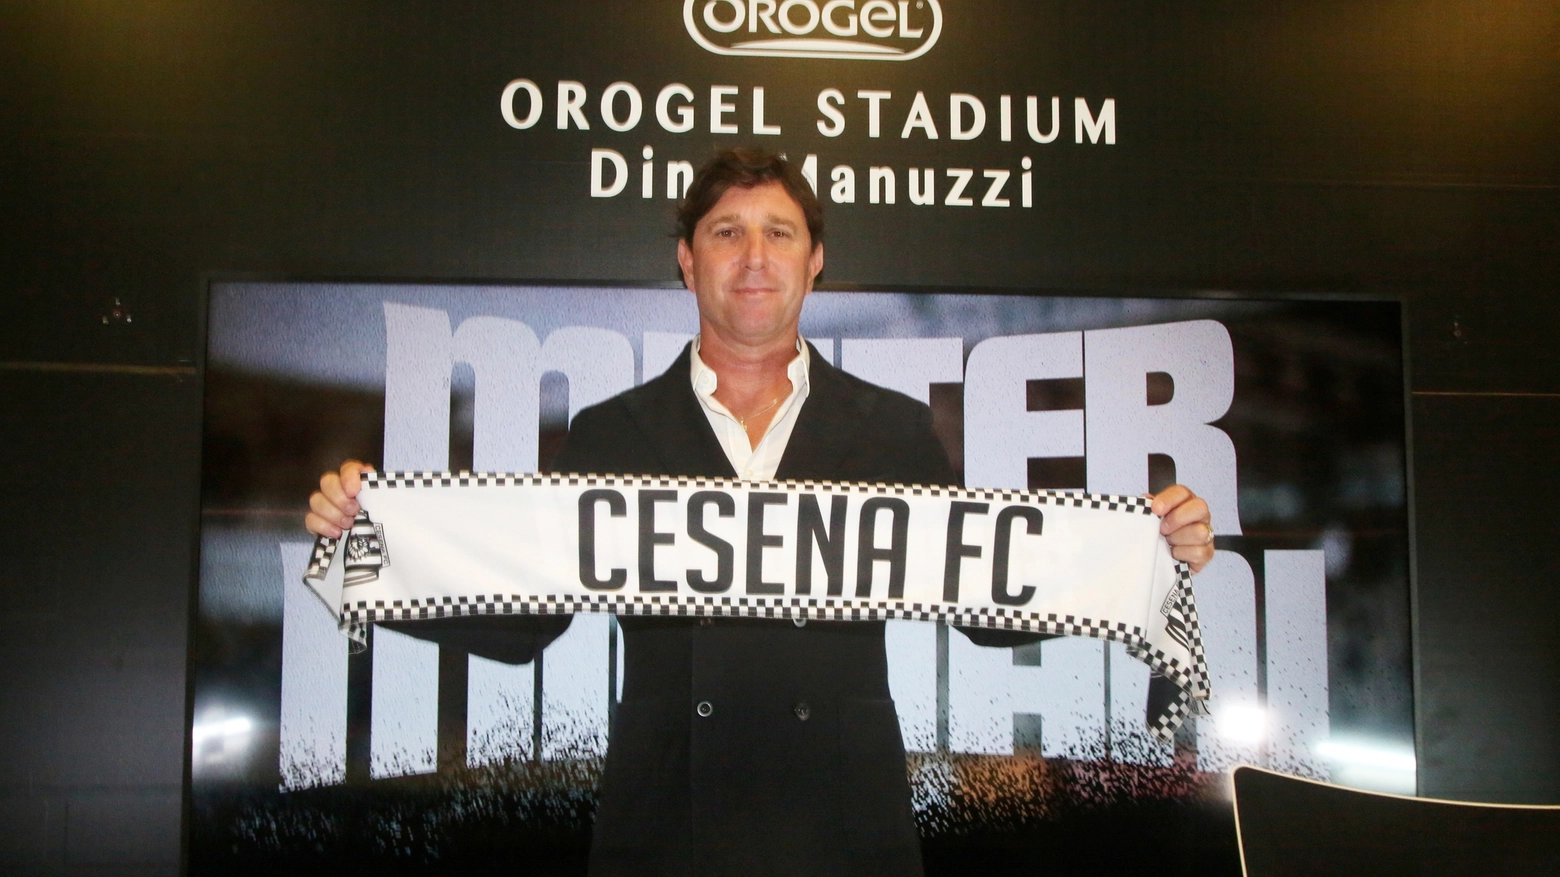 Il nuovo allenatore del Cesena Fc Michele Mignani si presenta: "E' un motivo di orgoglio essere qui"